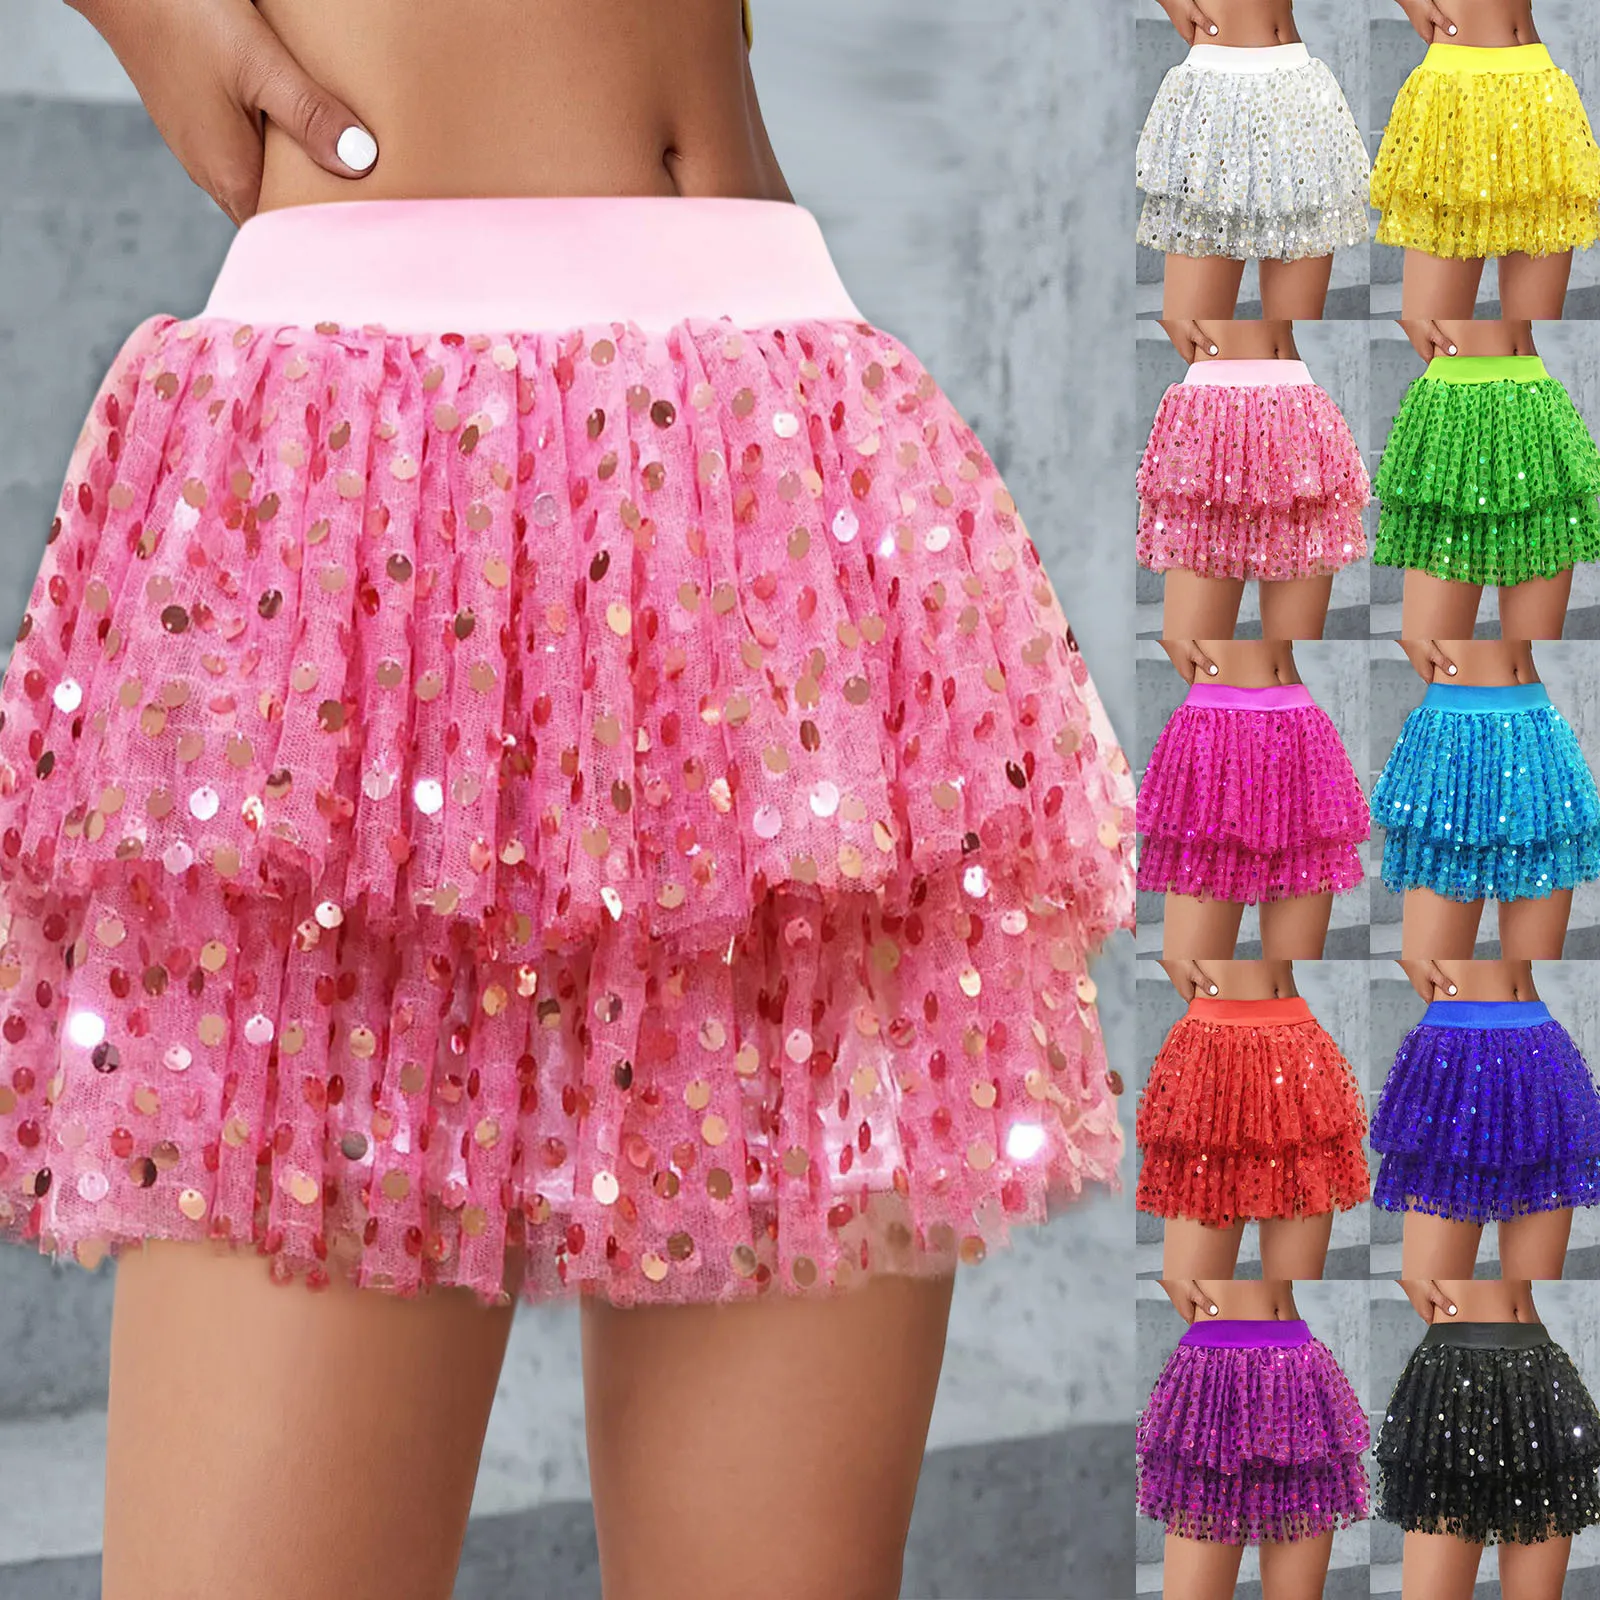 

Ladies Ruffle Bedspread Ladies Cake Skirt Short Skirt Mesh Skirt Performance Skirt Fine Glitter Sequins Cheerleader Tutu Skirt